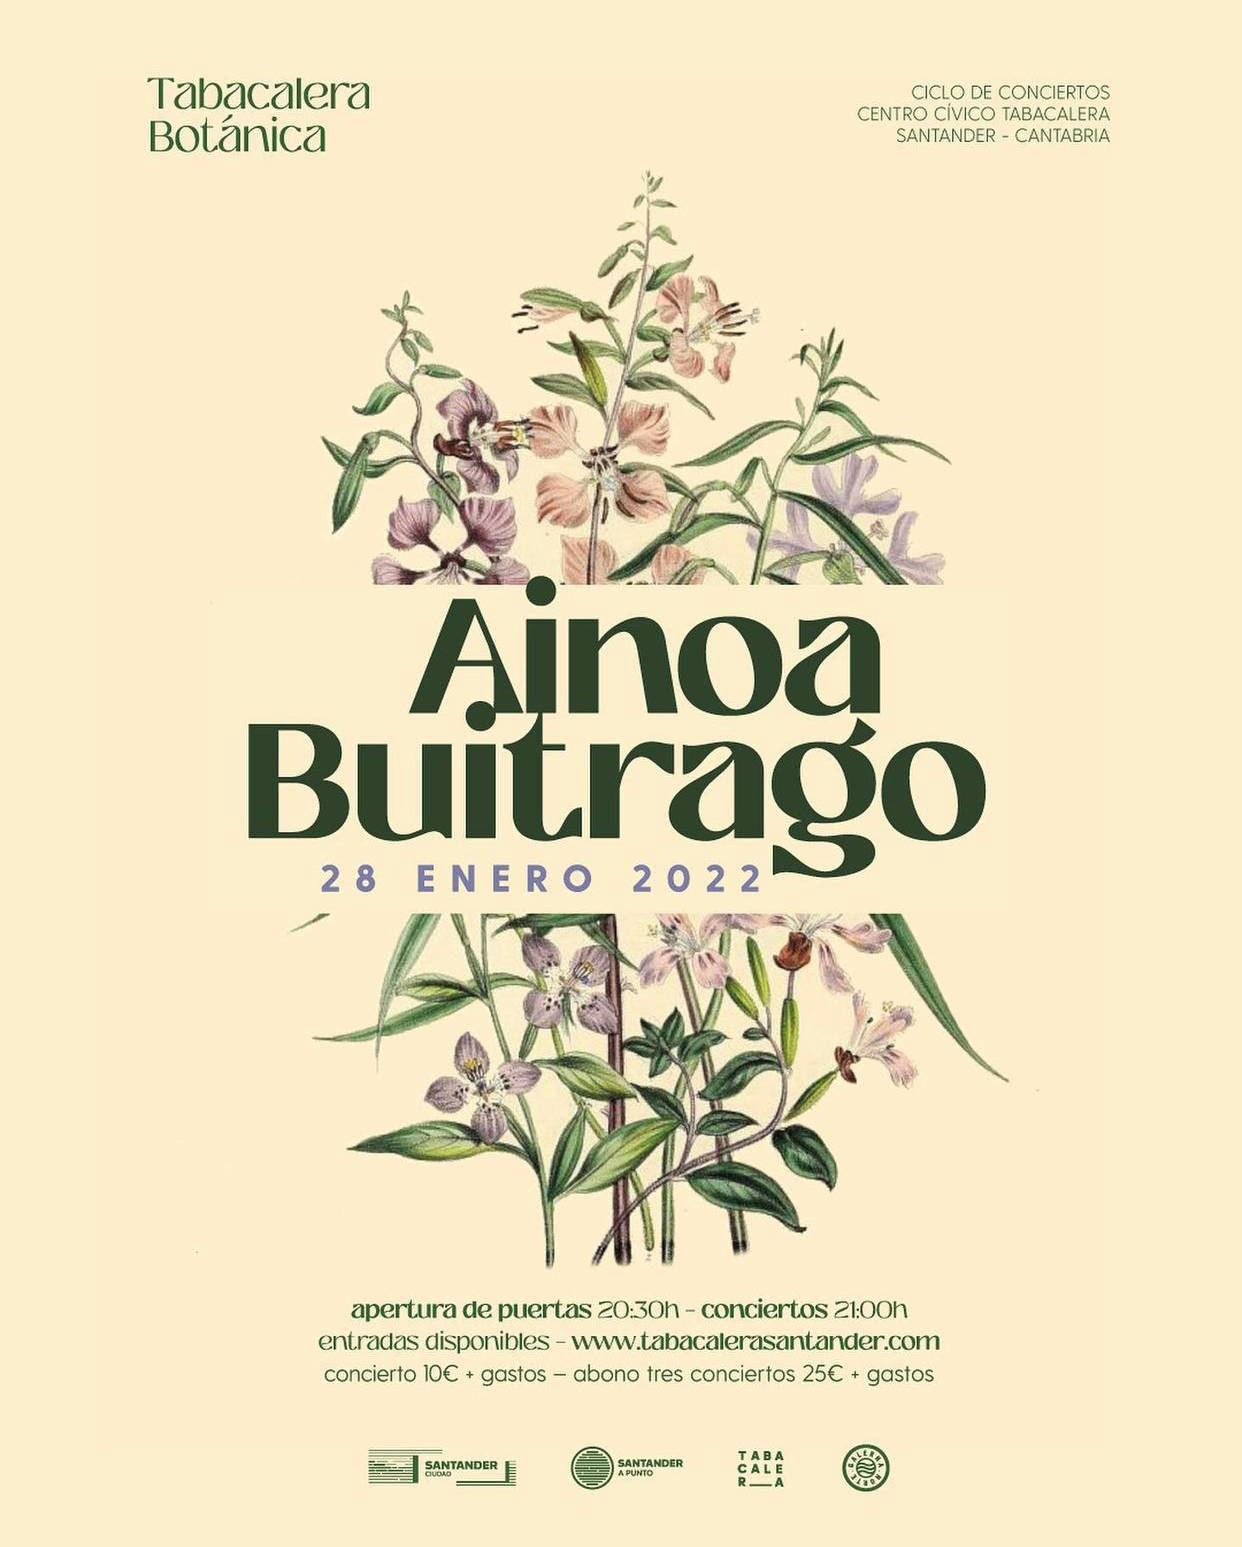 Concierto de AINOA BUITRAGO en Santander – Tabacalera Botánica 2021-2022